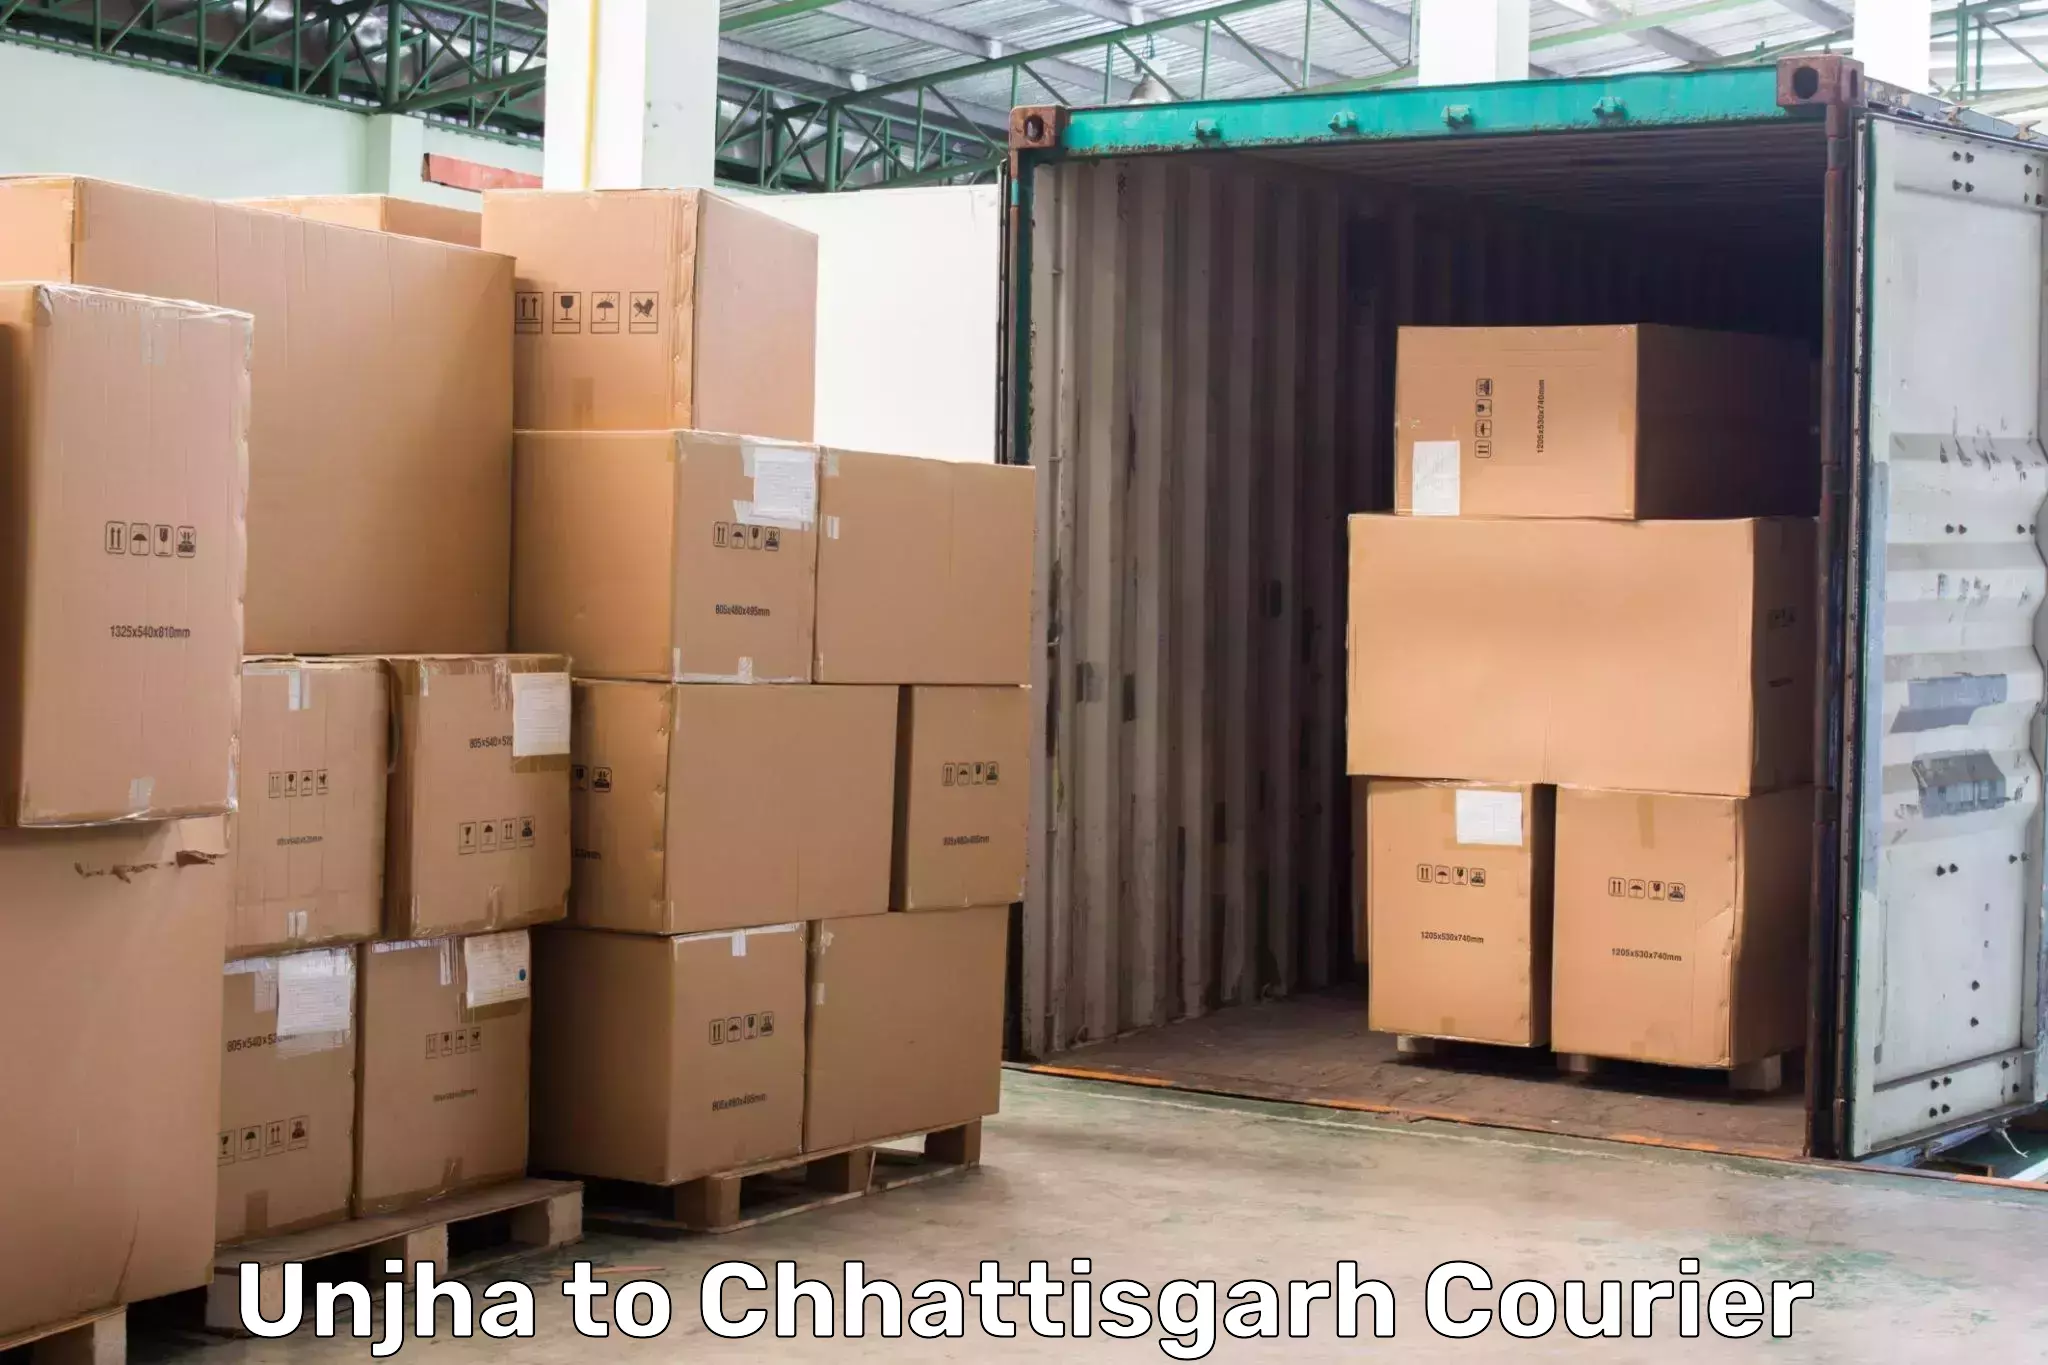 Speedy delivery service Unjha to Tilda